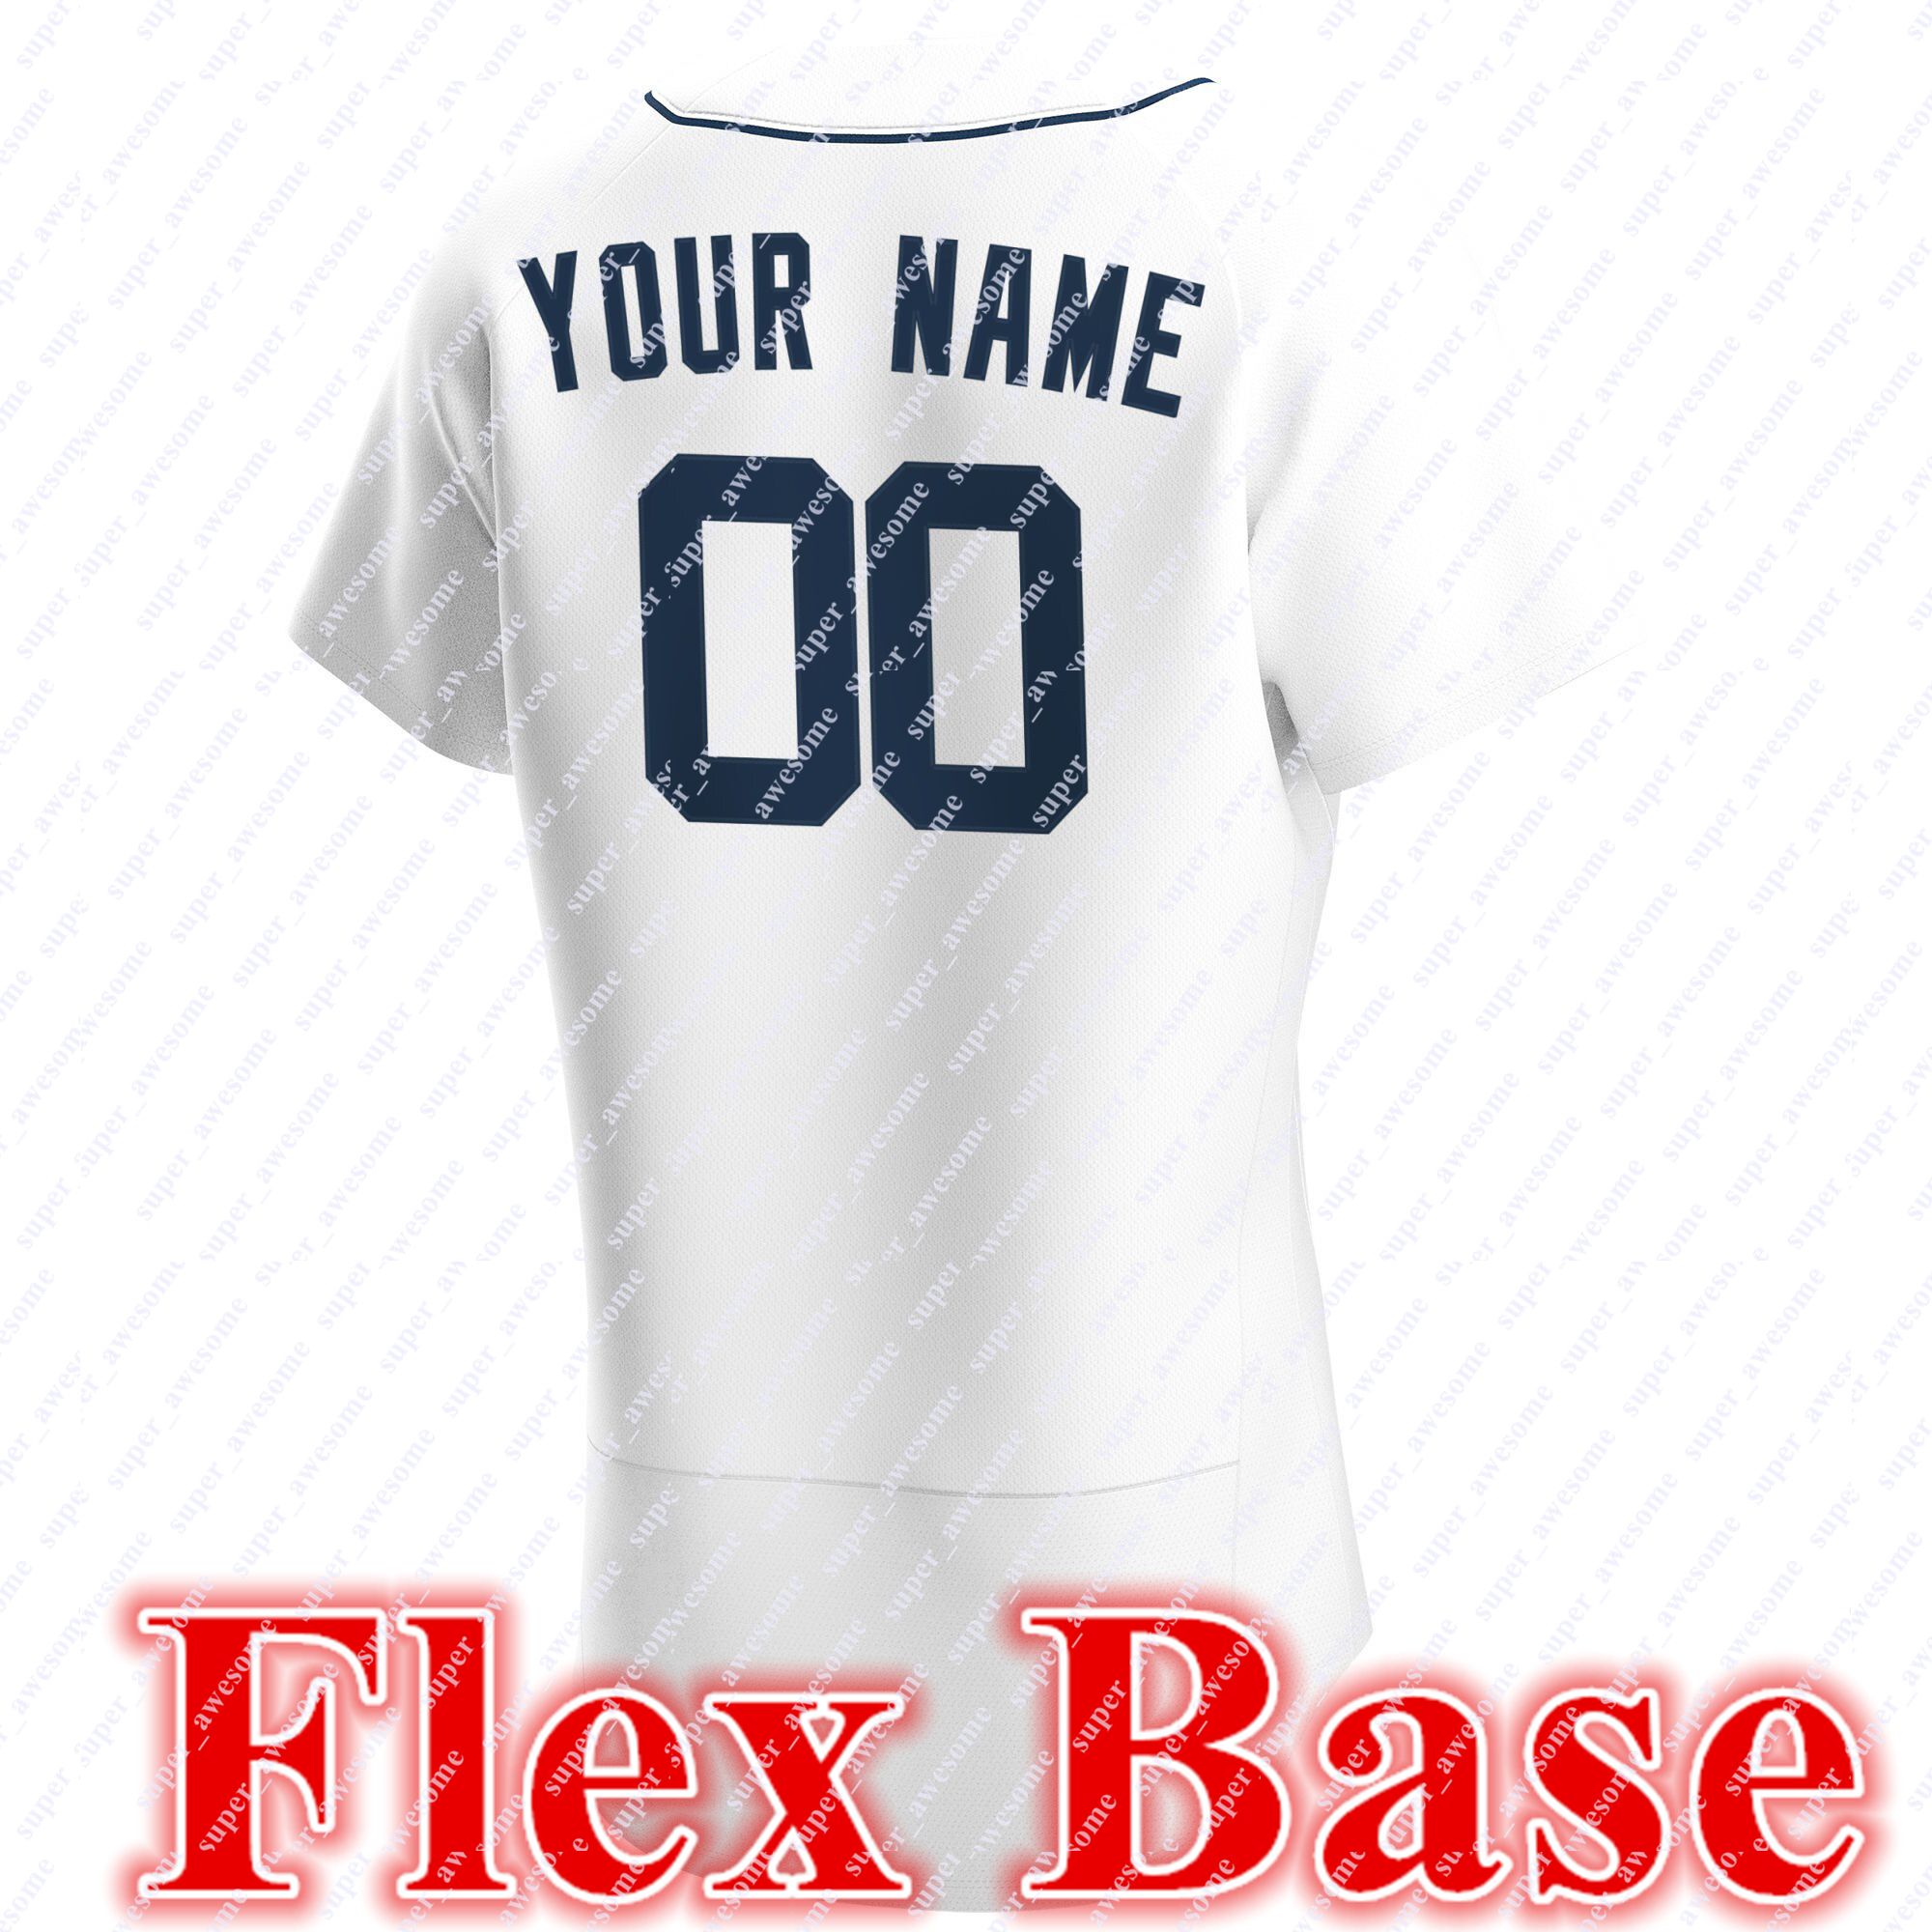 White Flex Base